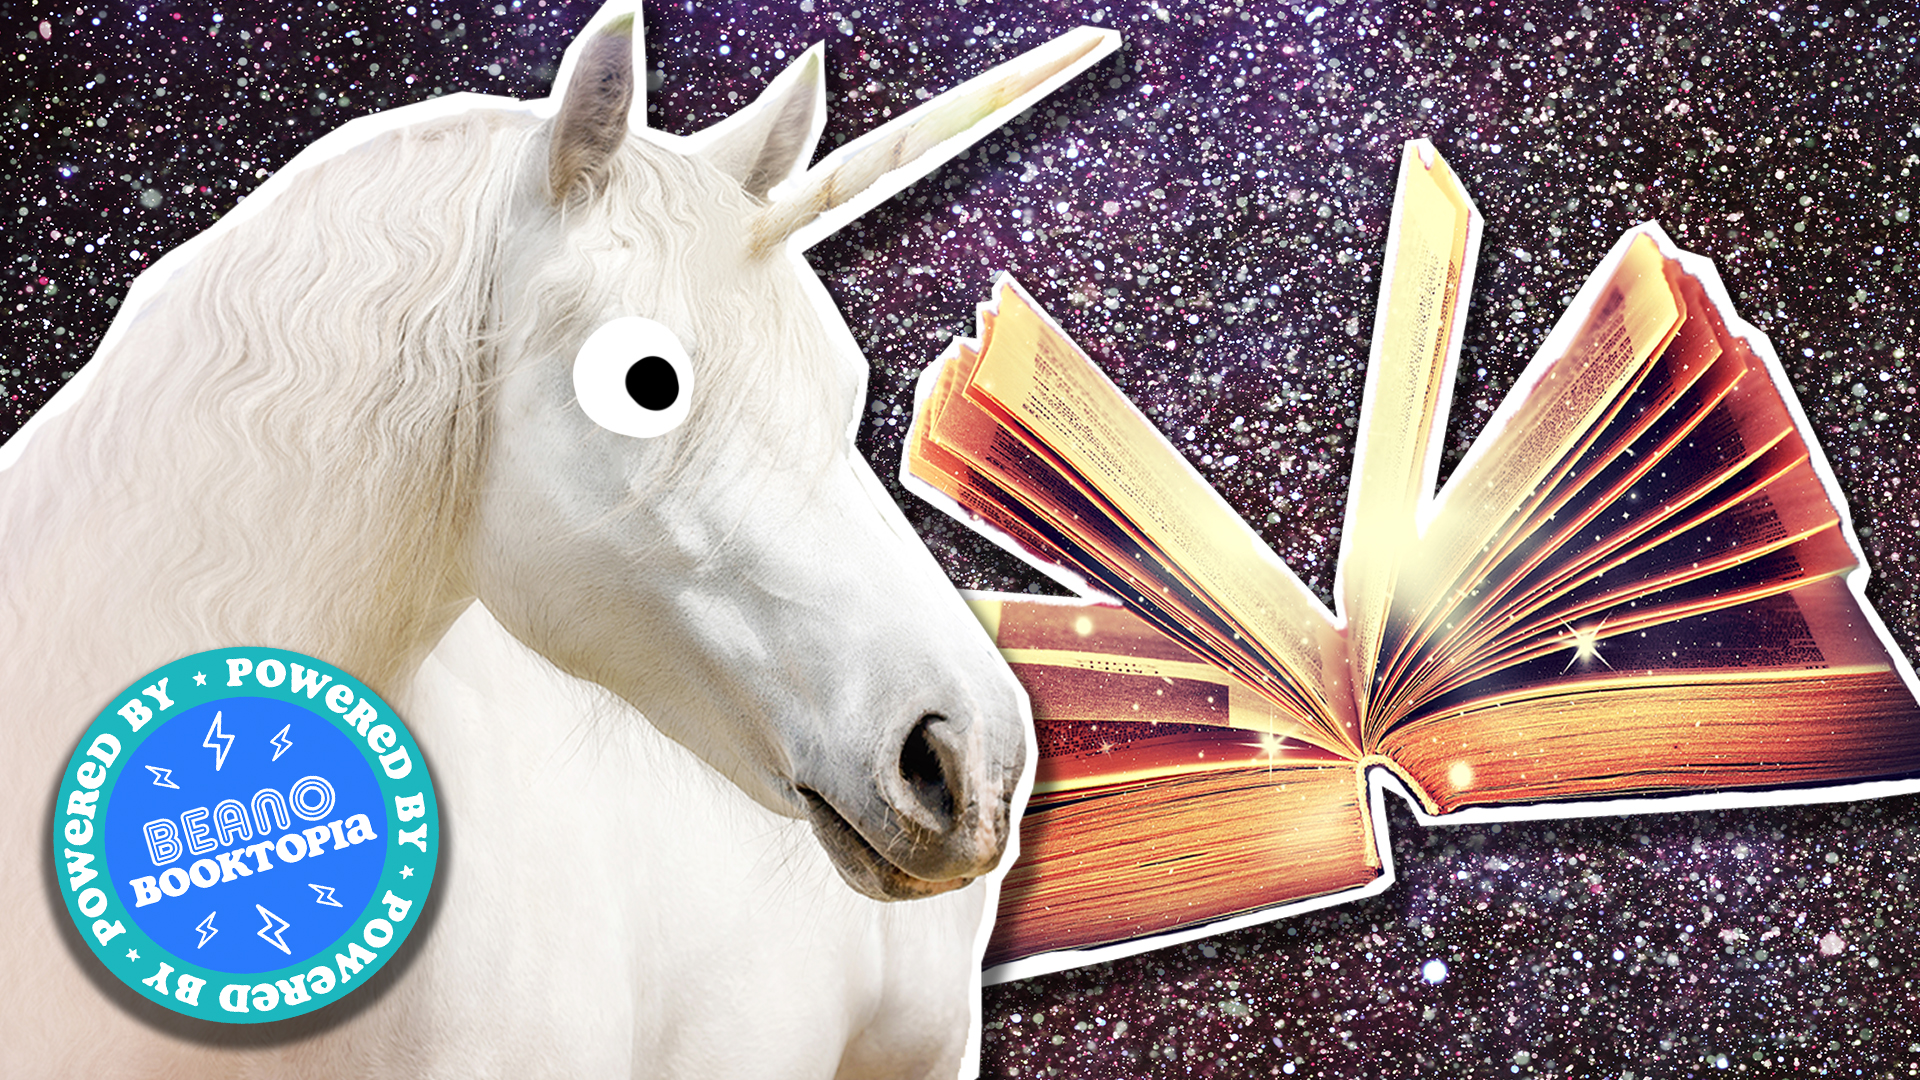 Unicorn and fantasy book